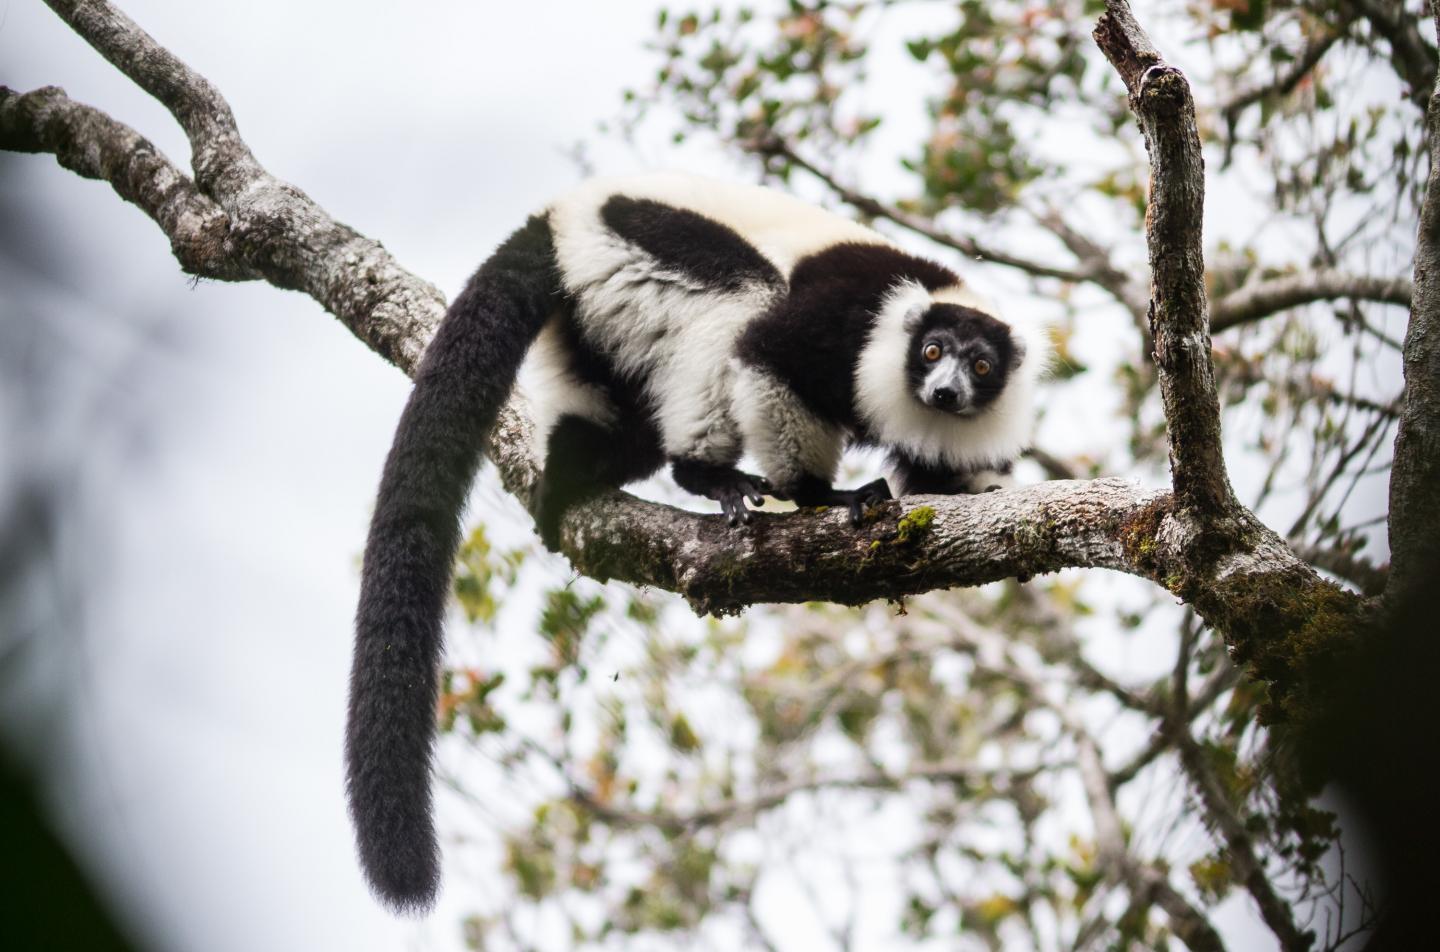 One of Madagascar's Lemurs